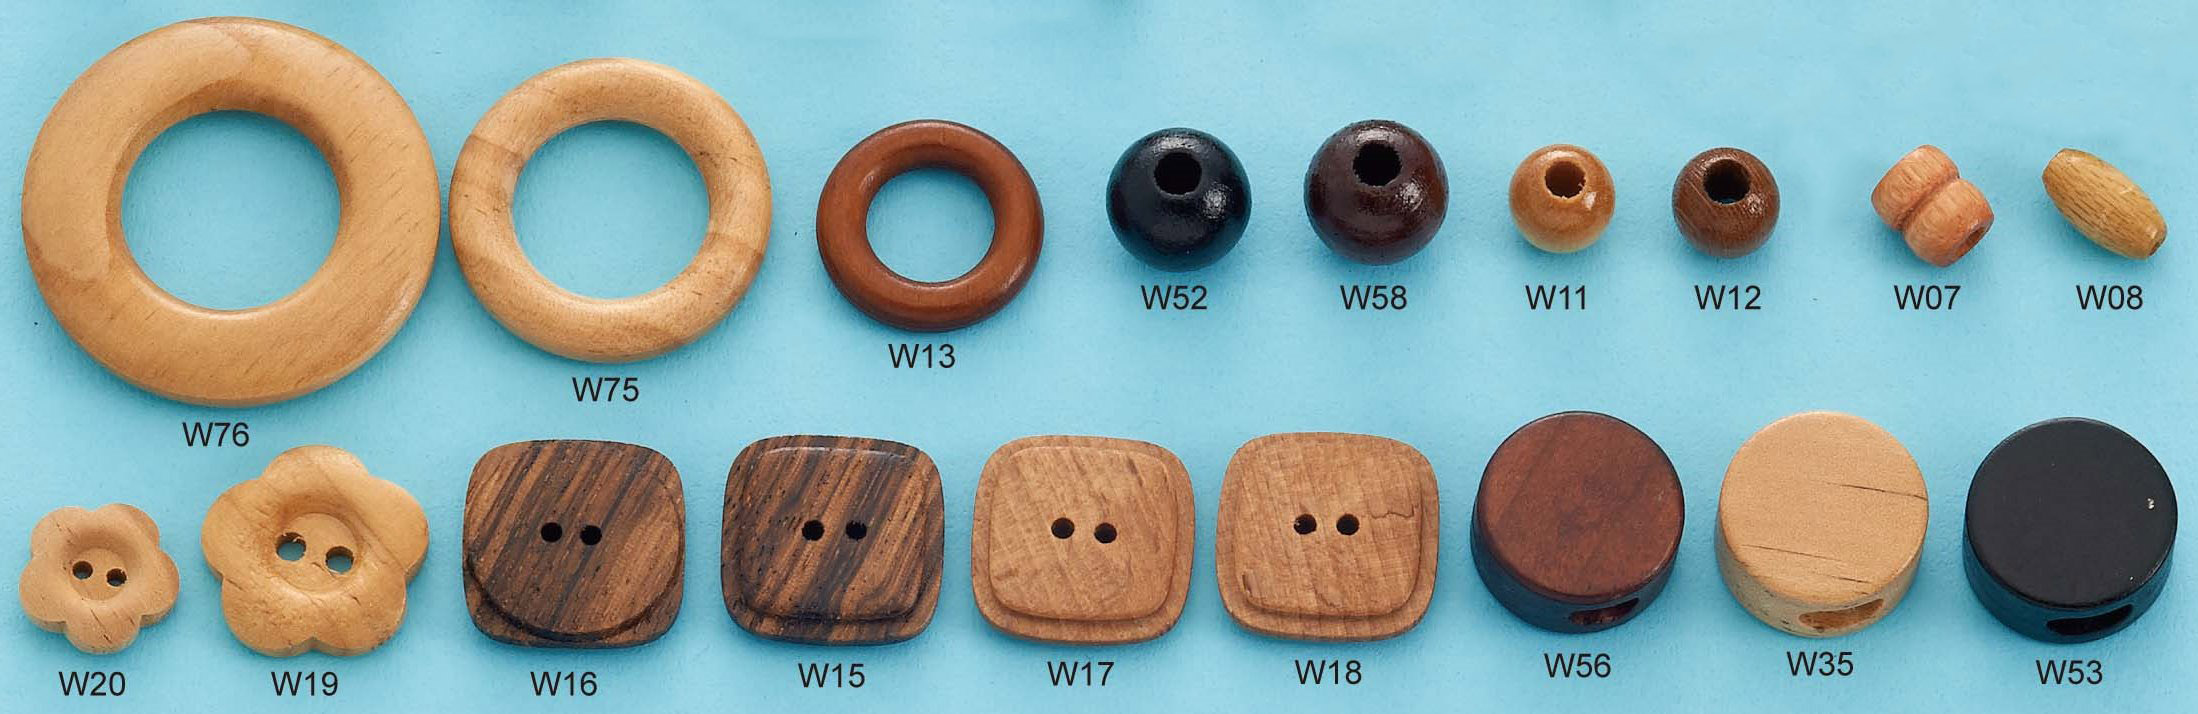 木製扣子